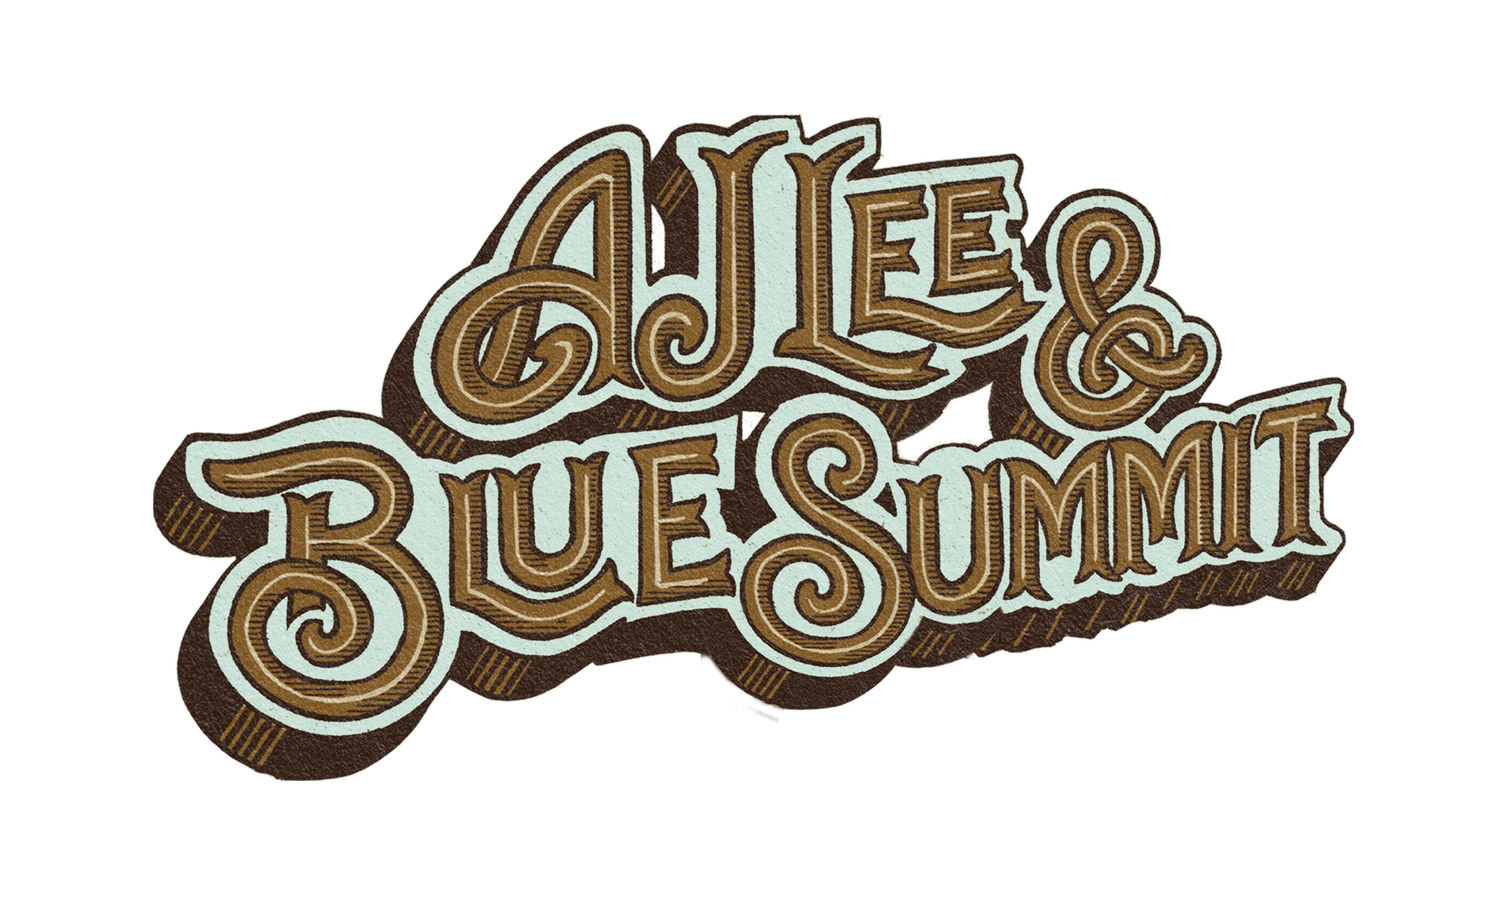 AJ LEE and BLUE SUMMIT